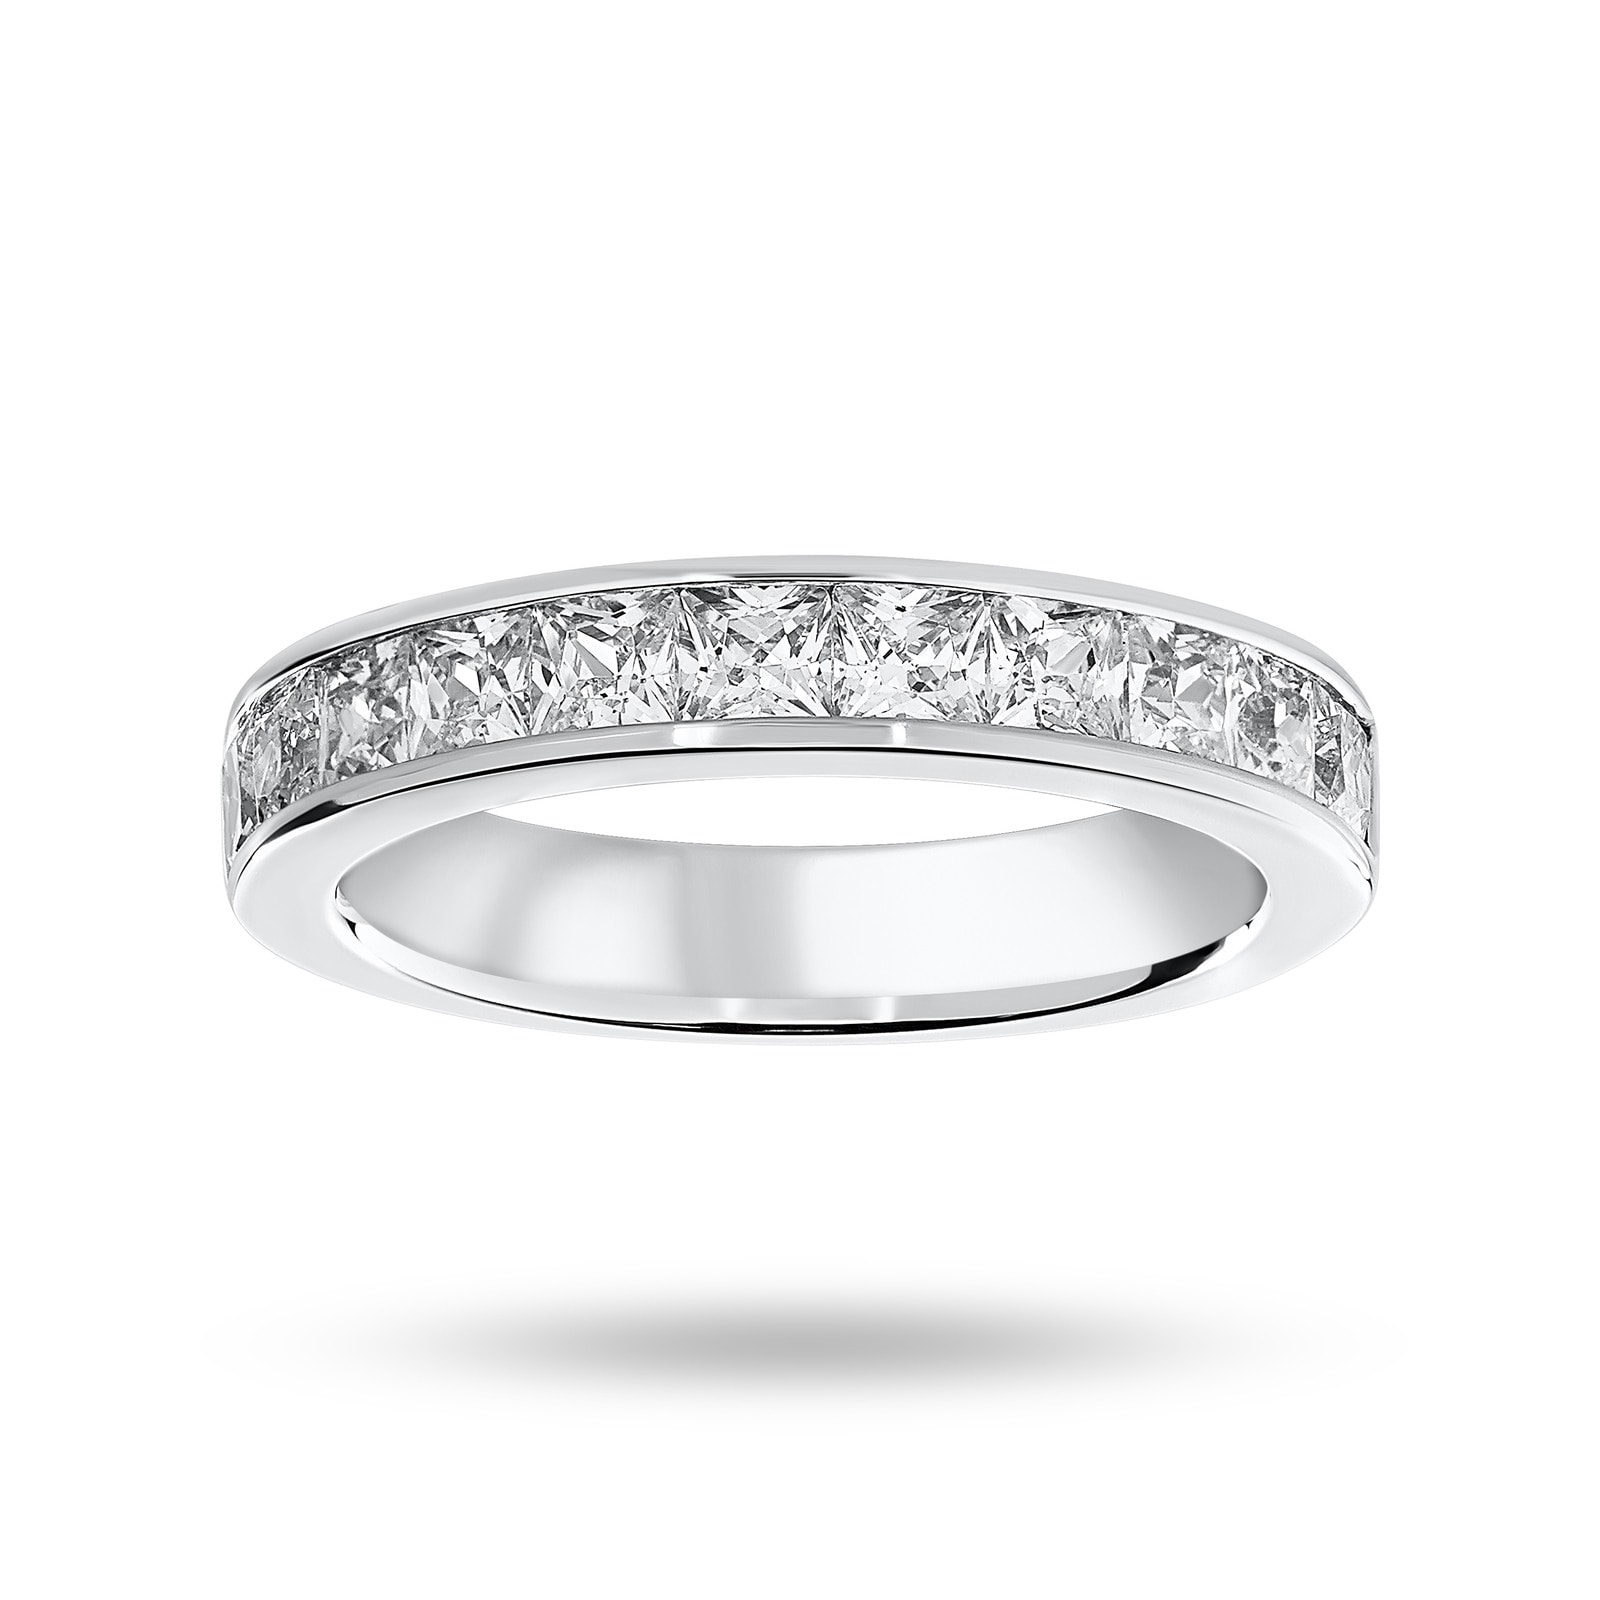 18 Carat White Gold 1.50 Carat Princess Cut Half Eternity Ring - Ring Size N